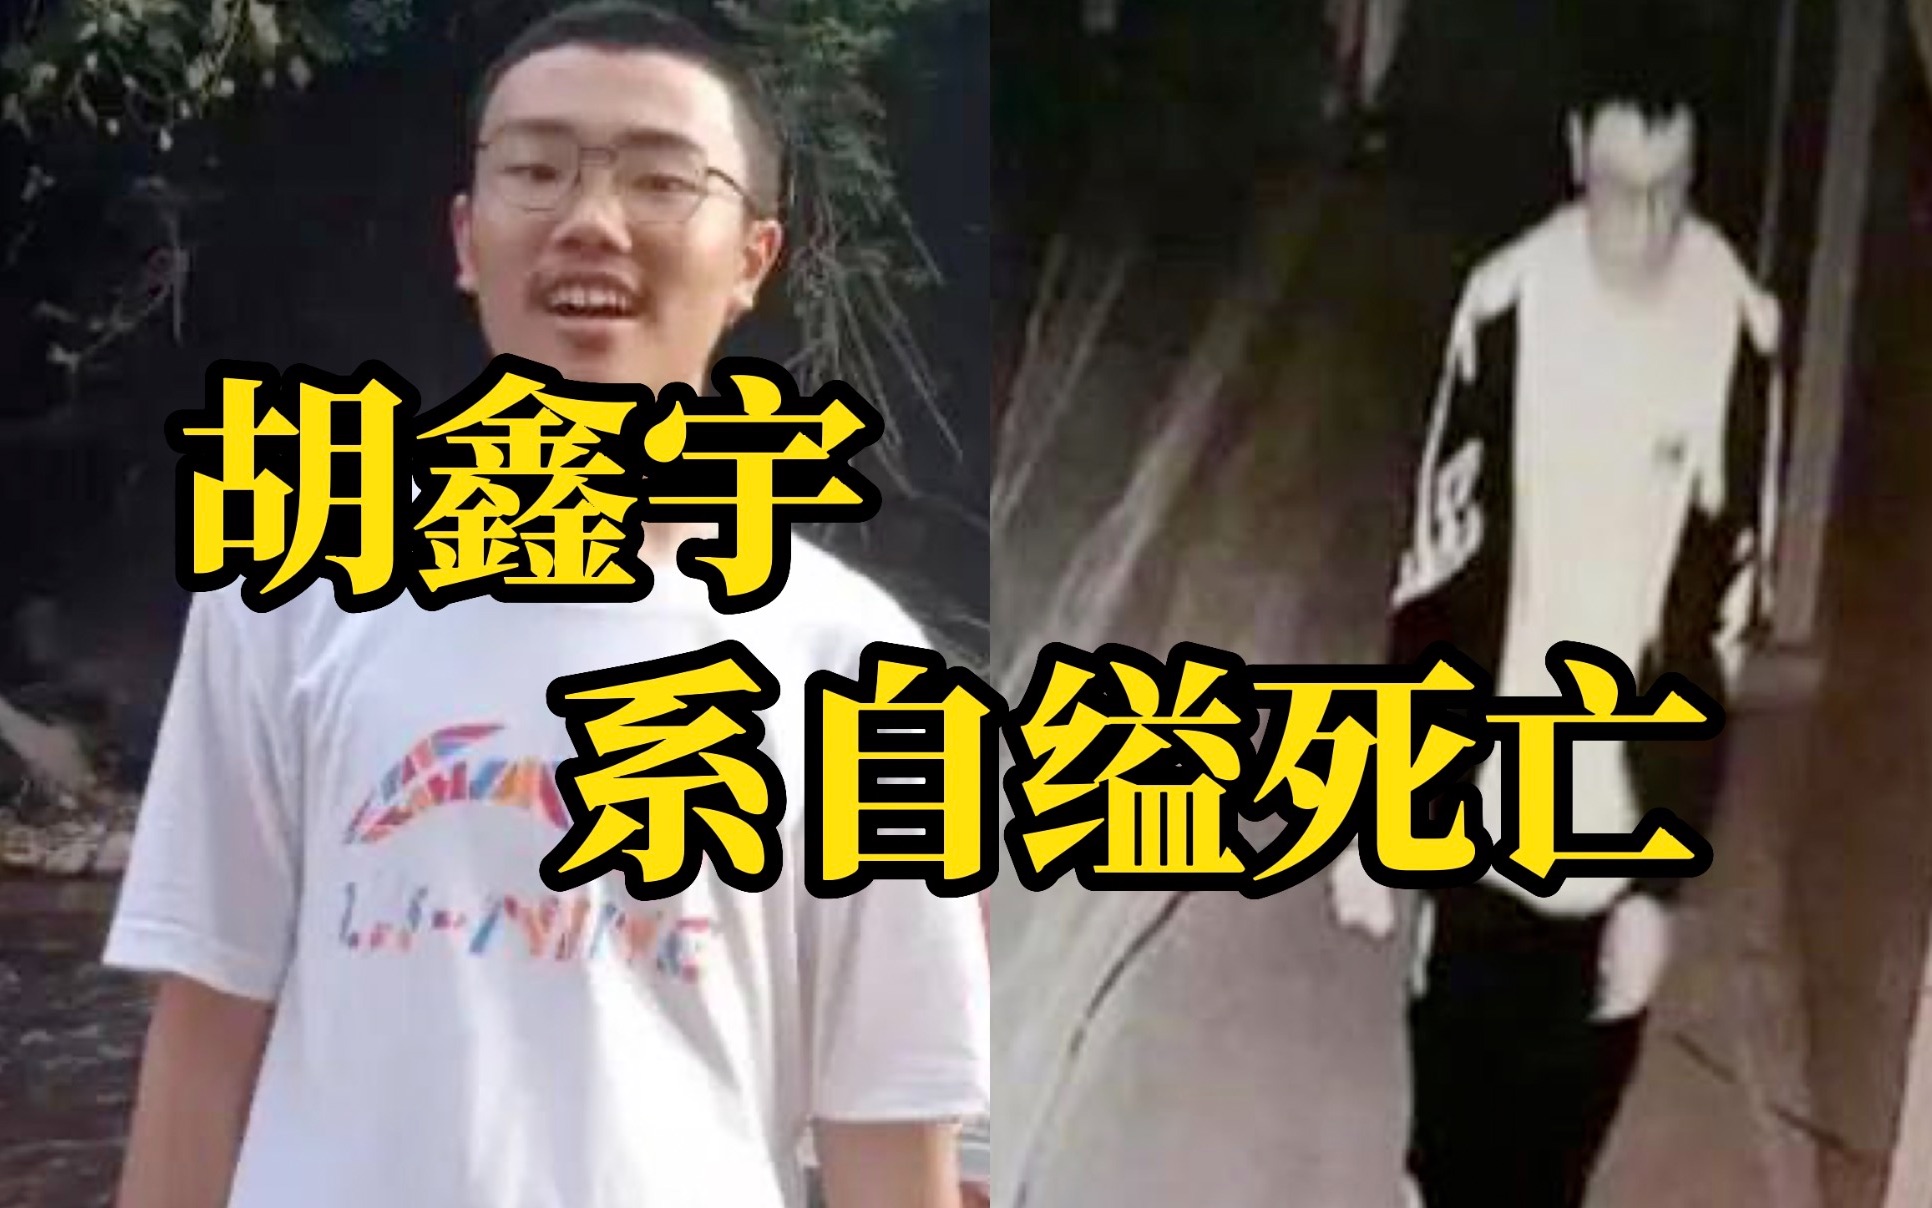 2月2日胡鑫宇事件调查情况发布会消息，胡鑫宇系自缢死亡。